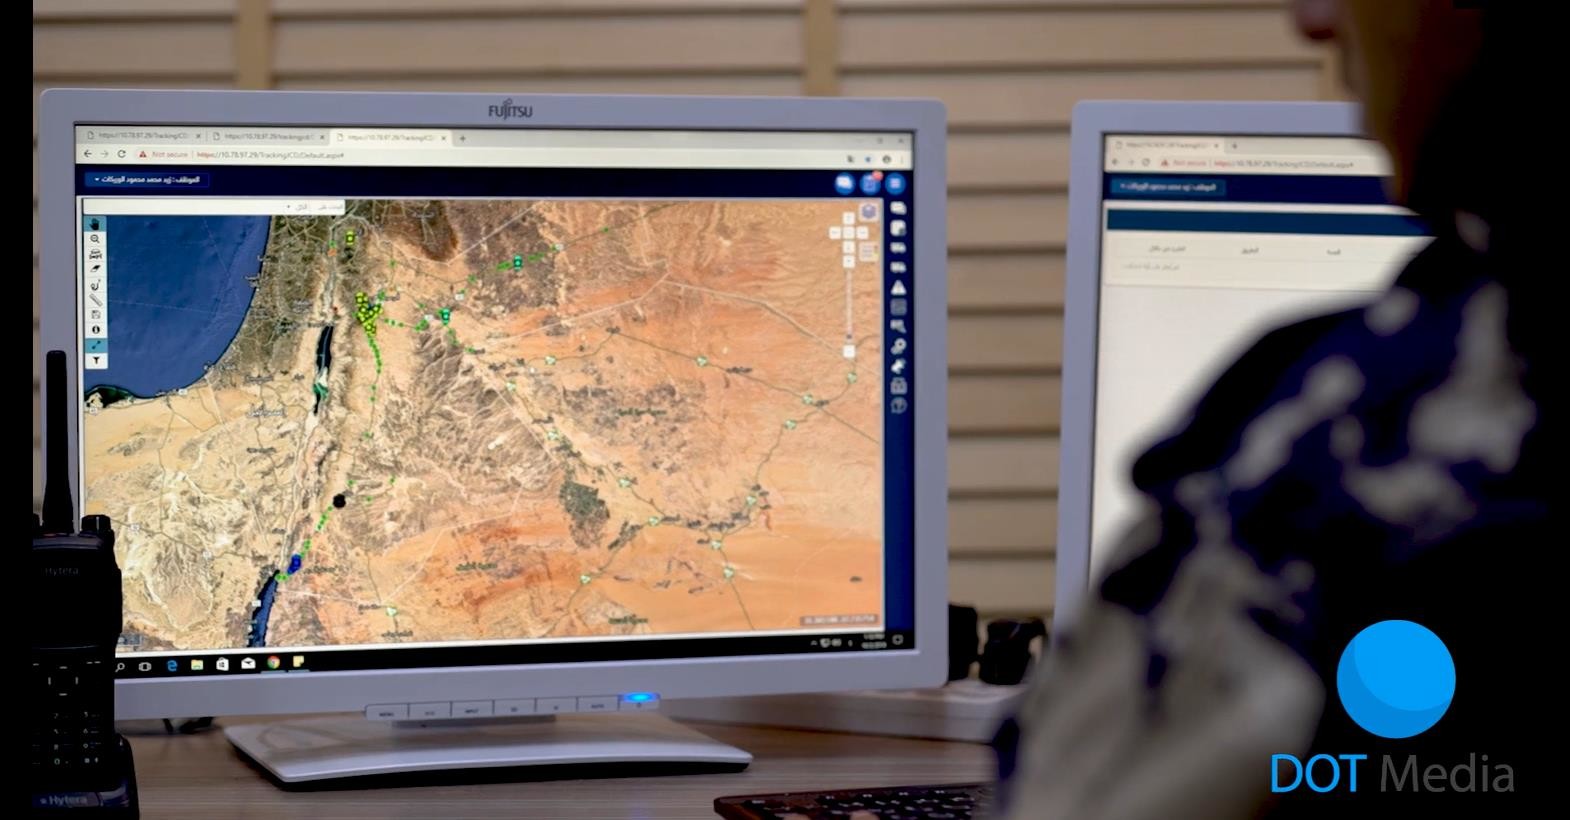 آخرین مورد شرکت برنامه قفل الکترونیکی هوشمند در نظارت گمرک در اردن